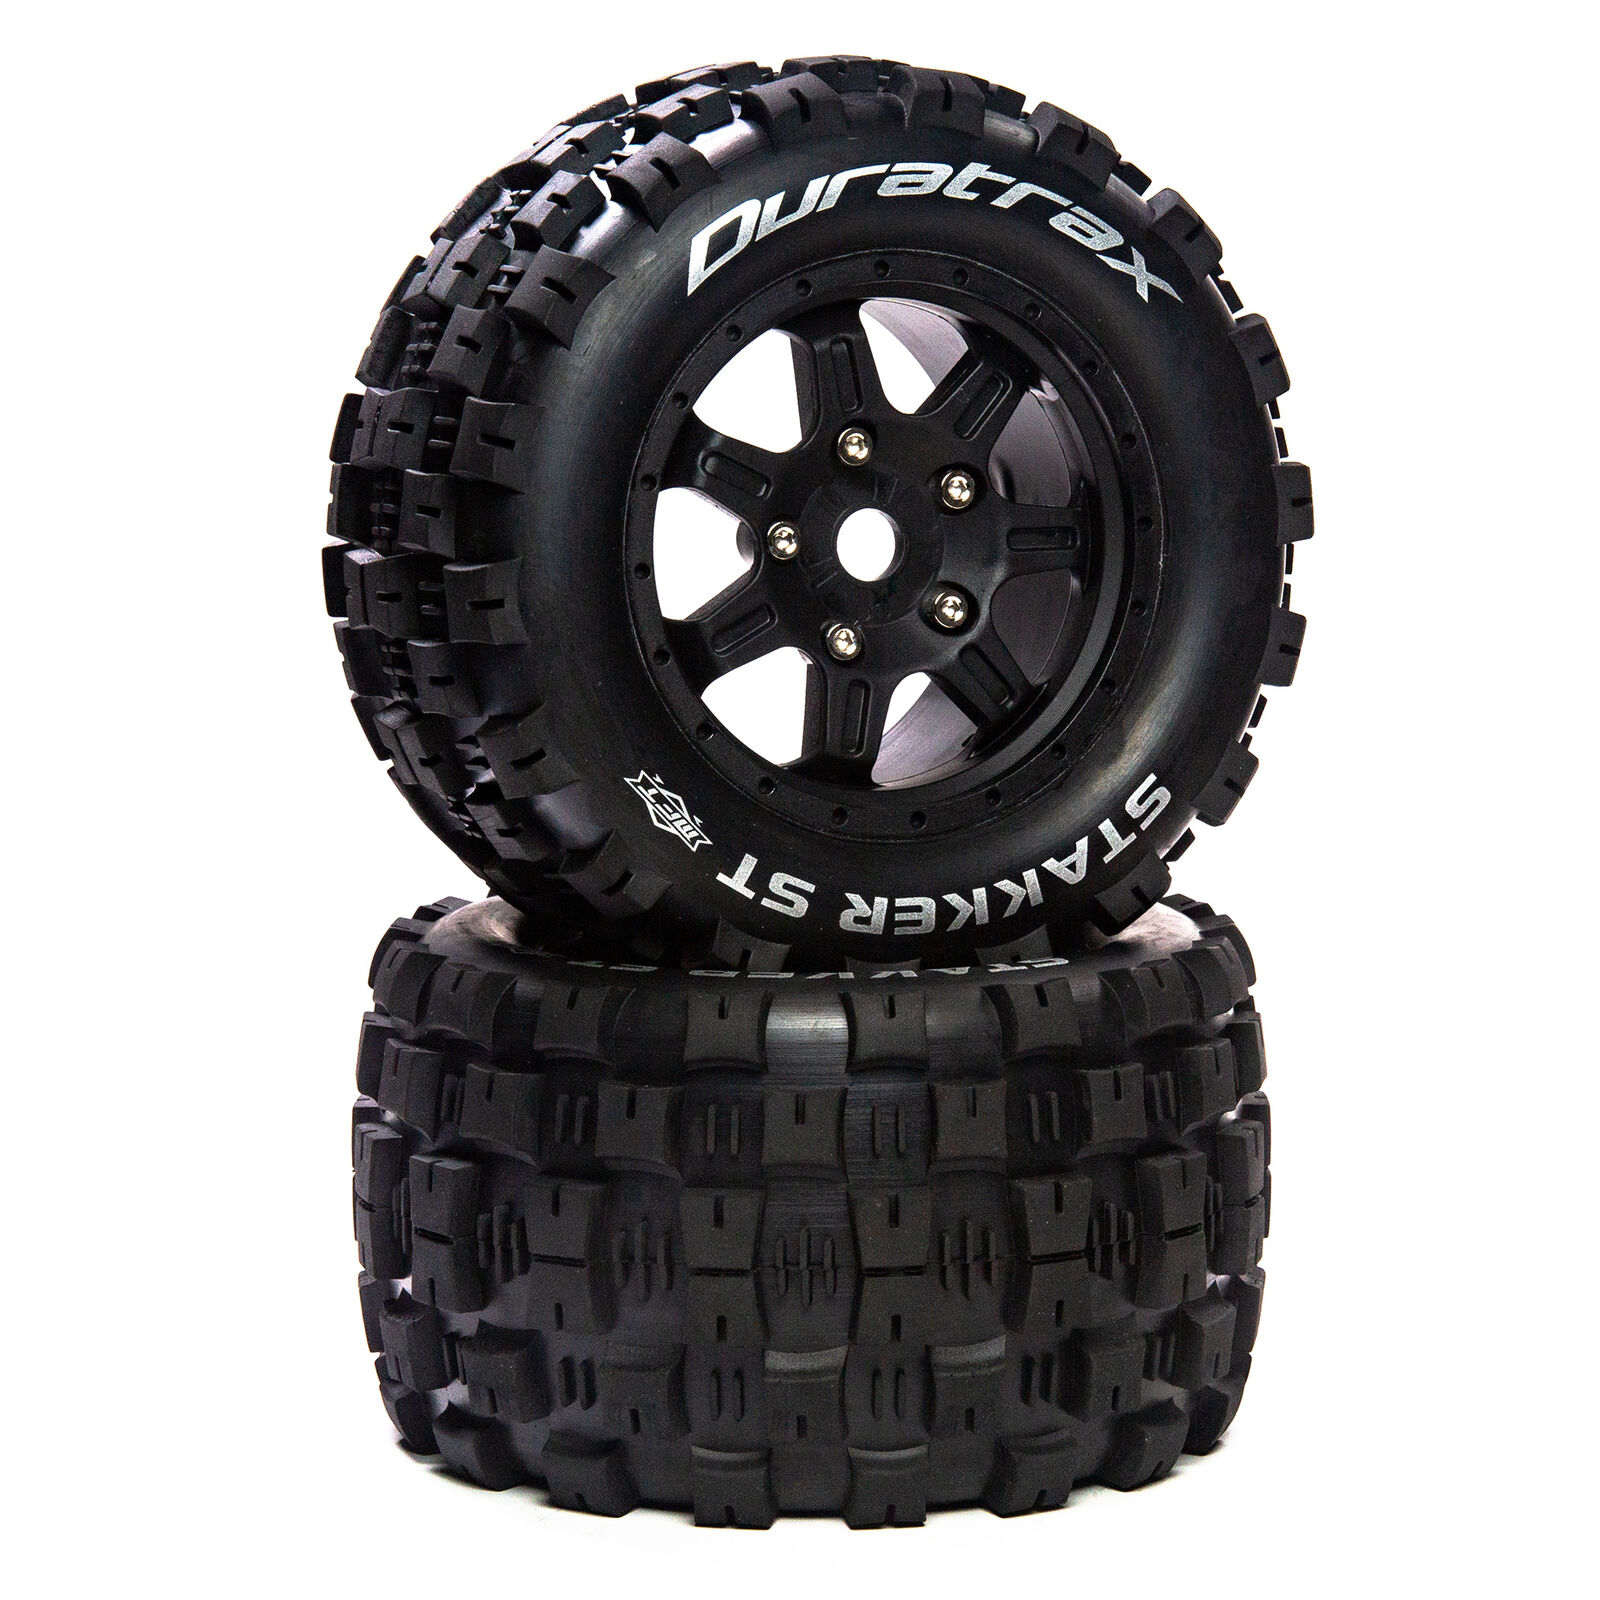 Stakker ST Belt 3.8" Mounted Front/Rear Tires 0 Offset 17mm, Black (2)